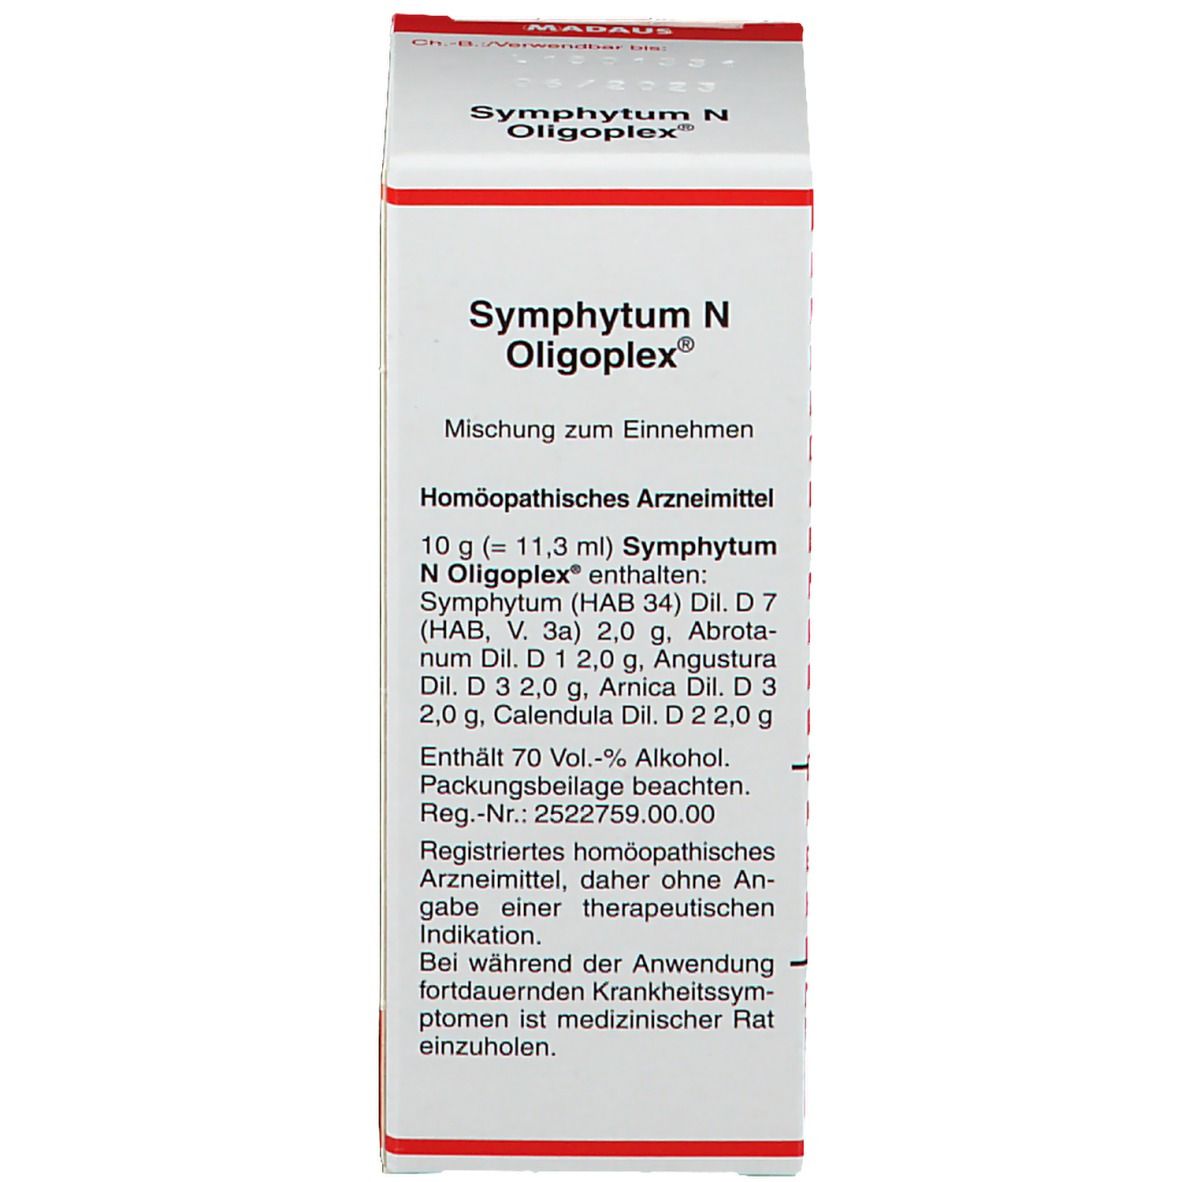 Symphytum N Oligoplex®